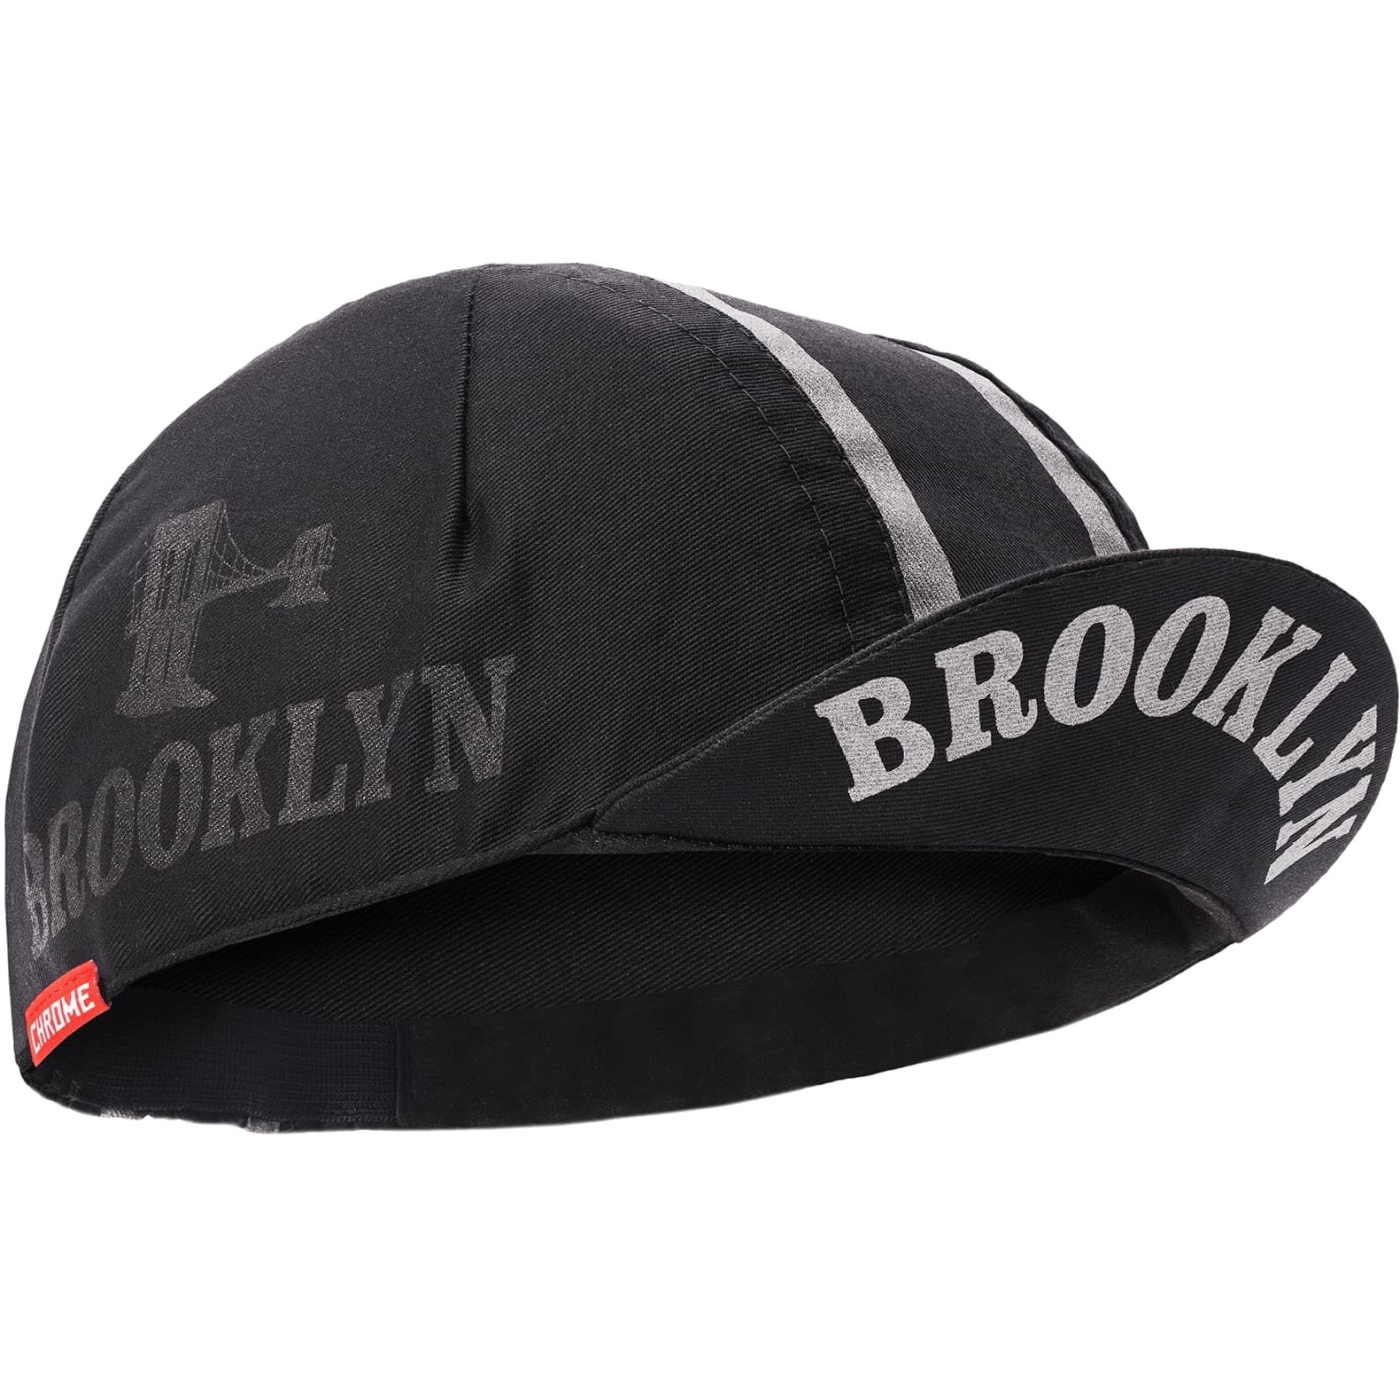 Productfoto van CHROME Chrome X Brooklyn Cycling Cap - Black